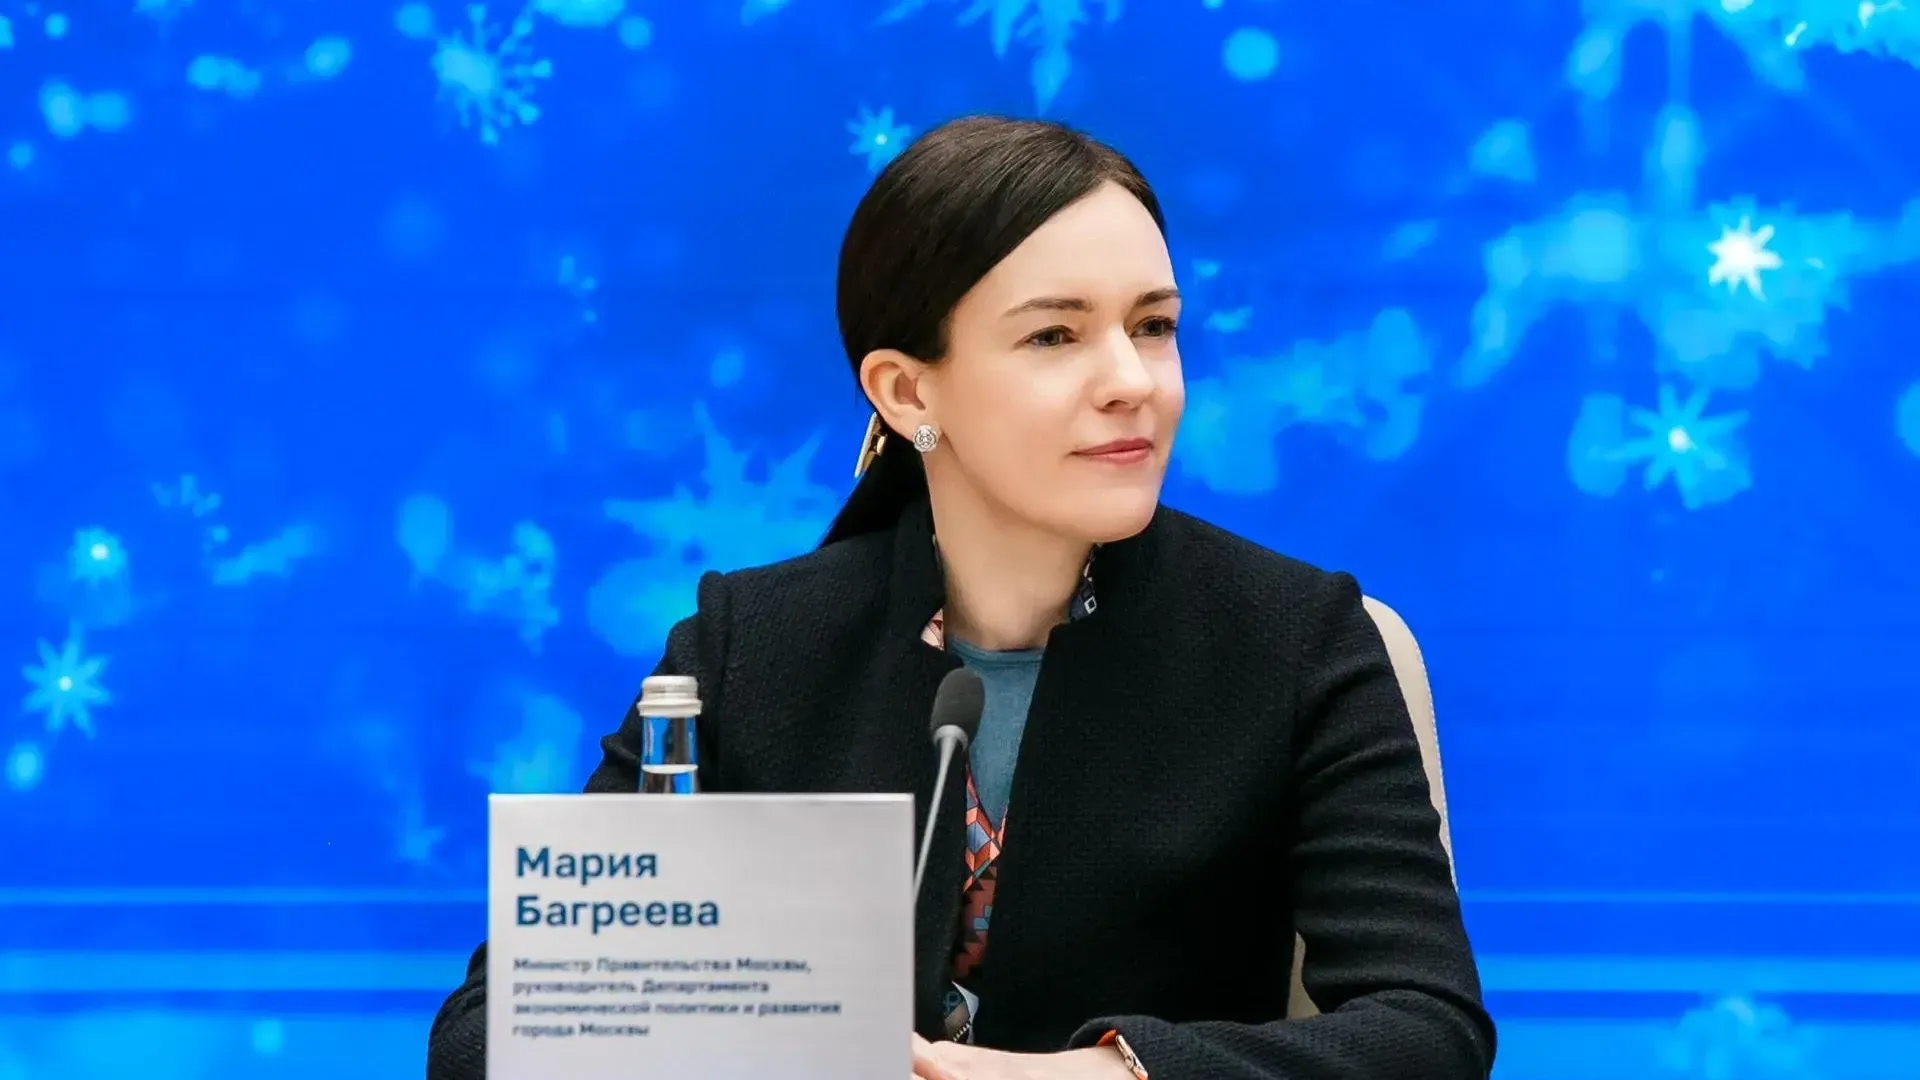 Мария Багреева: нацпроект «Производительность труда» помог транспортным компаниям сэкономить 238 млн руб